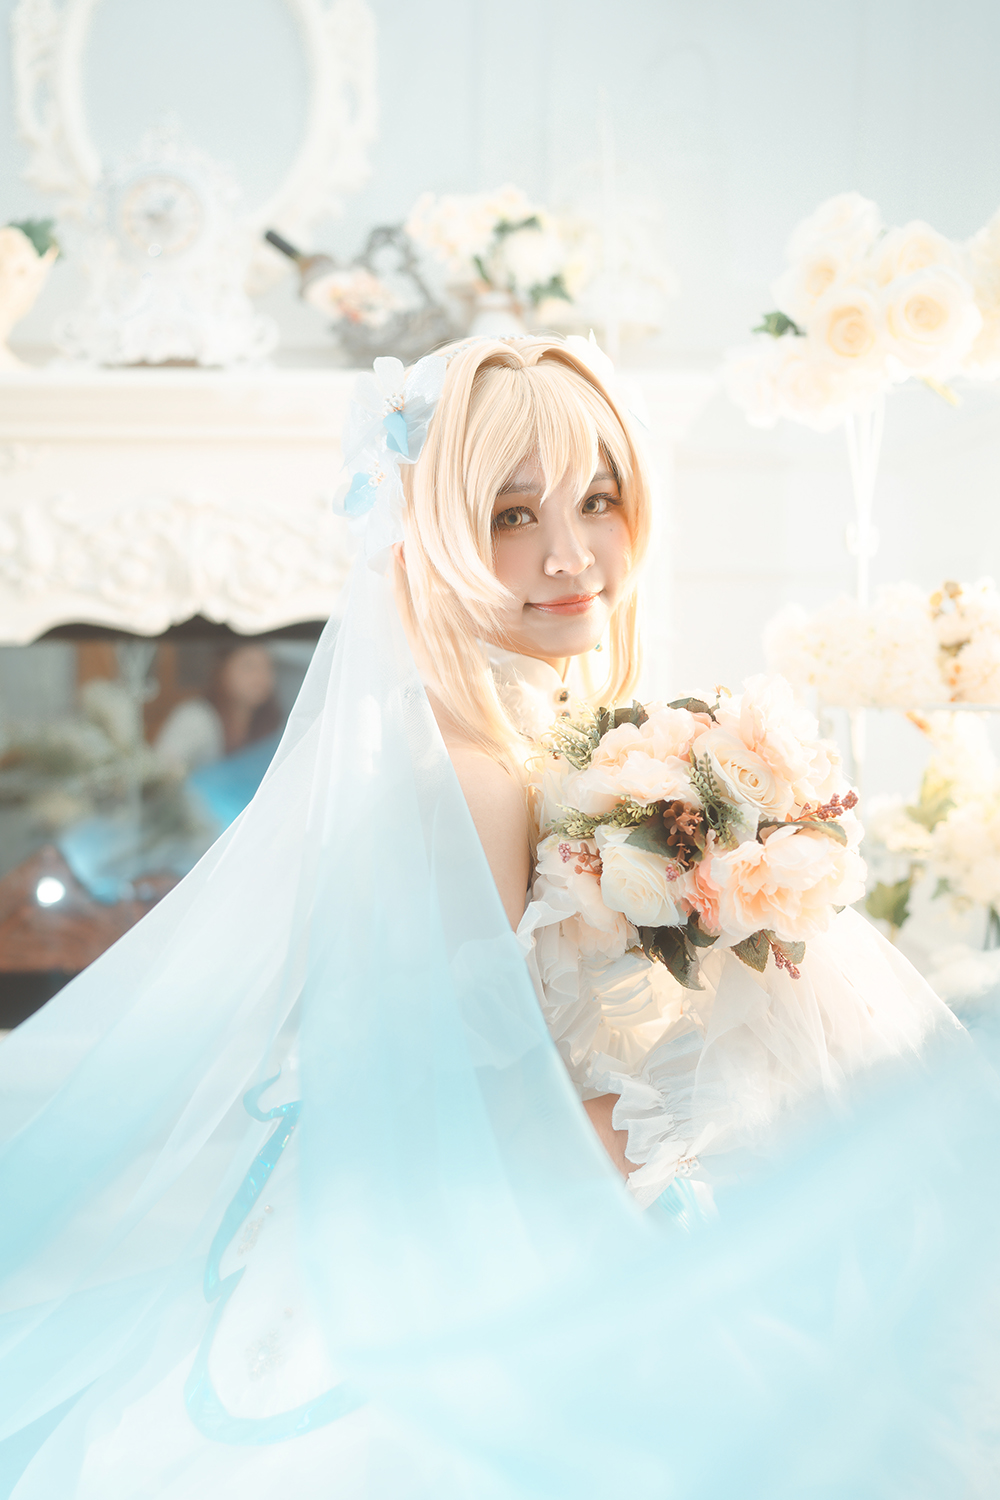 Genshin Impact Lumine bride cosplay photoshoot in Singapore.